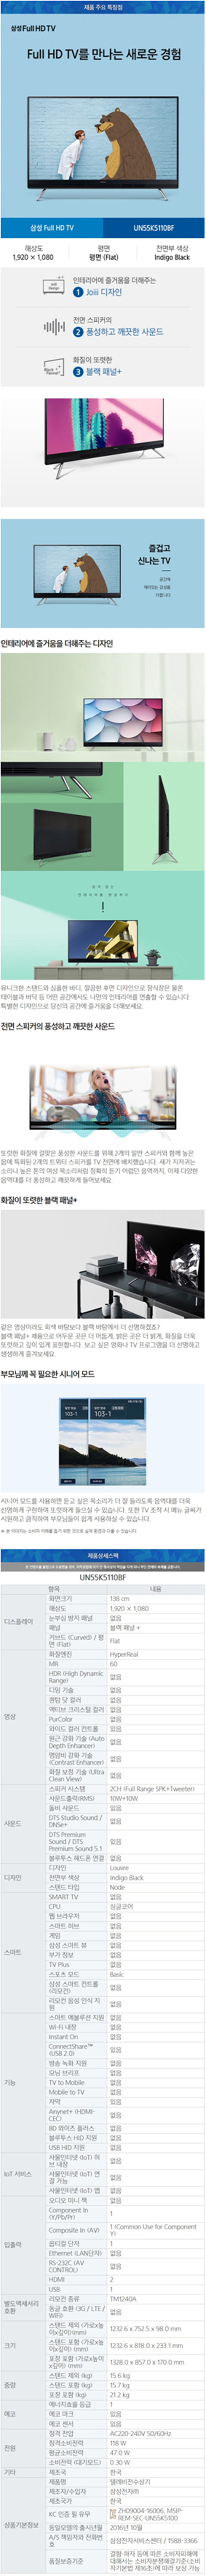 광진케이블 - 삼성 55인치 LED TV (UN55K5110BF) 상세보기